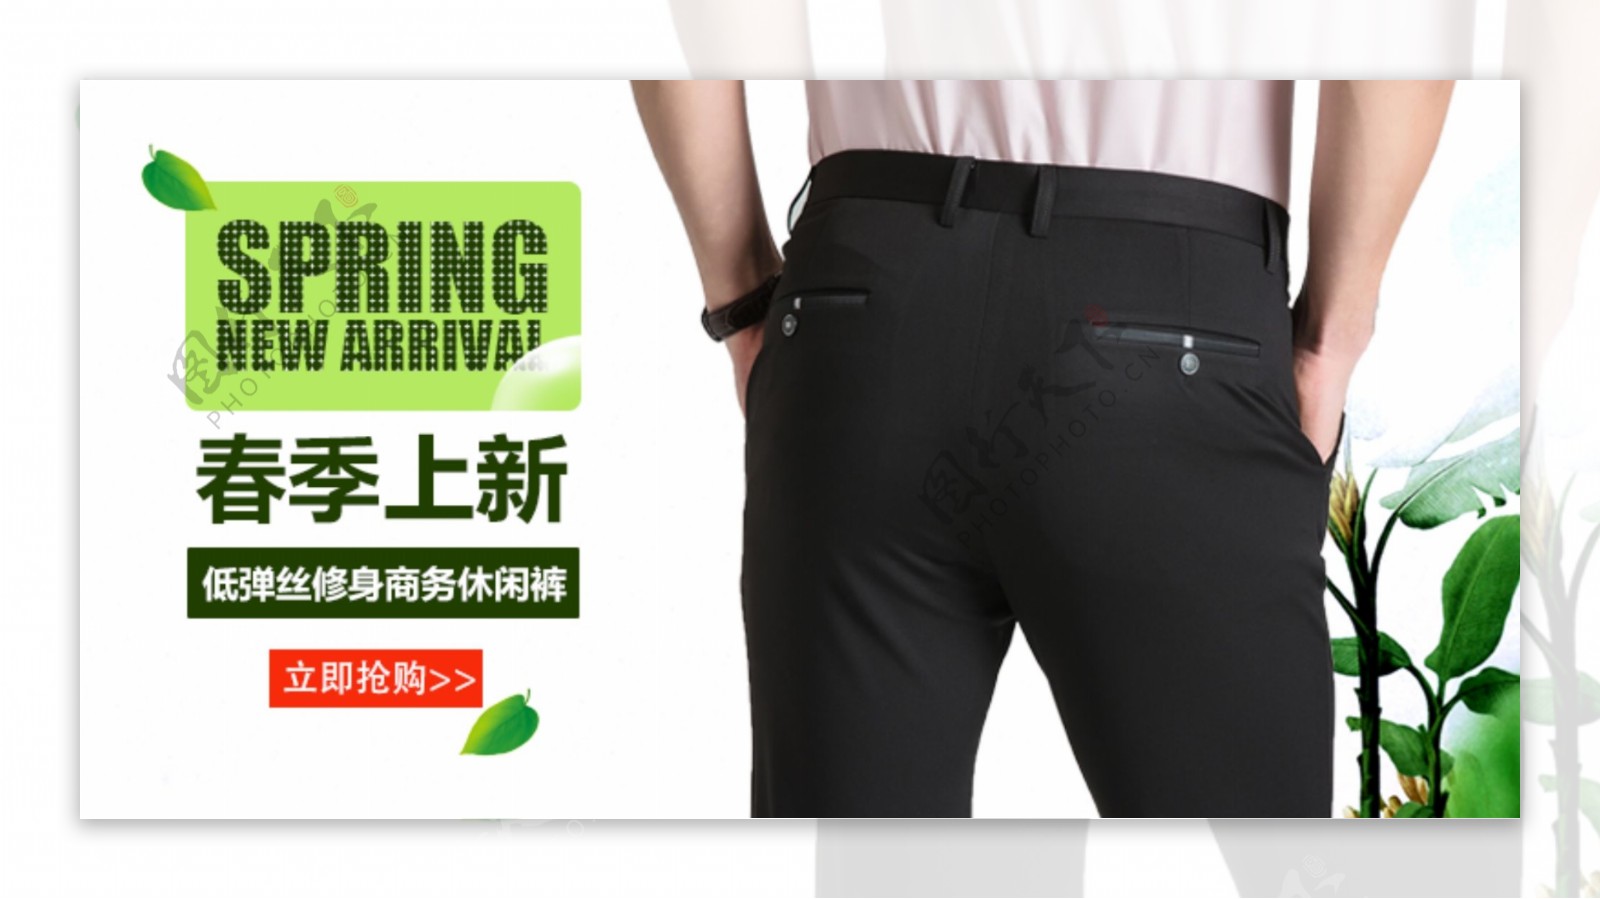 春季上新男装裤子素材绿色清新详情首页模板